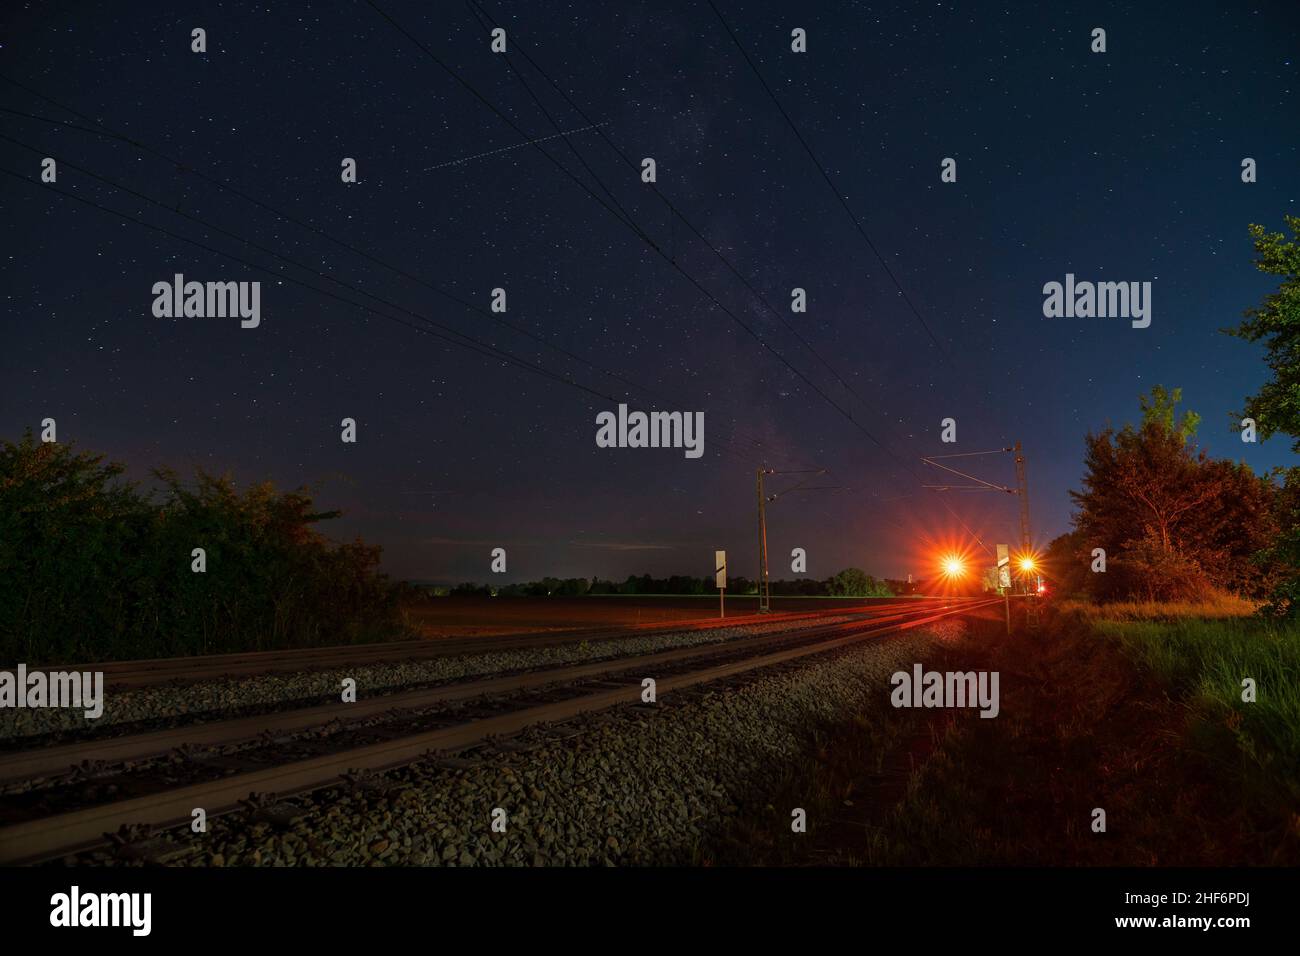 Milkyway mit seinem galaktischen Zentrum über einer einsamen Eisenbahnstrecke, die in einer sternenklaren Nacht über dem Stoppsignal steht Stockfoto